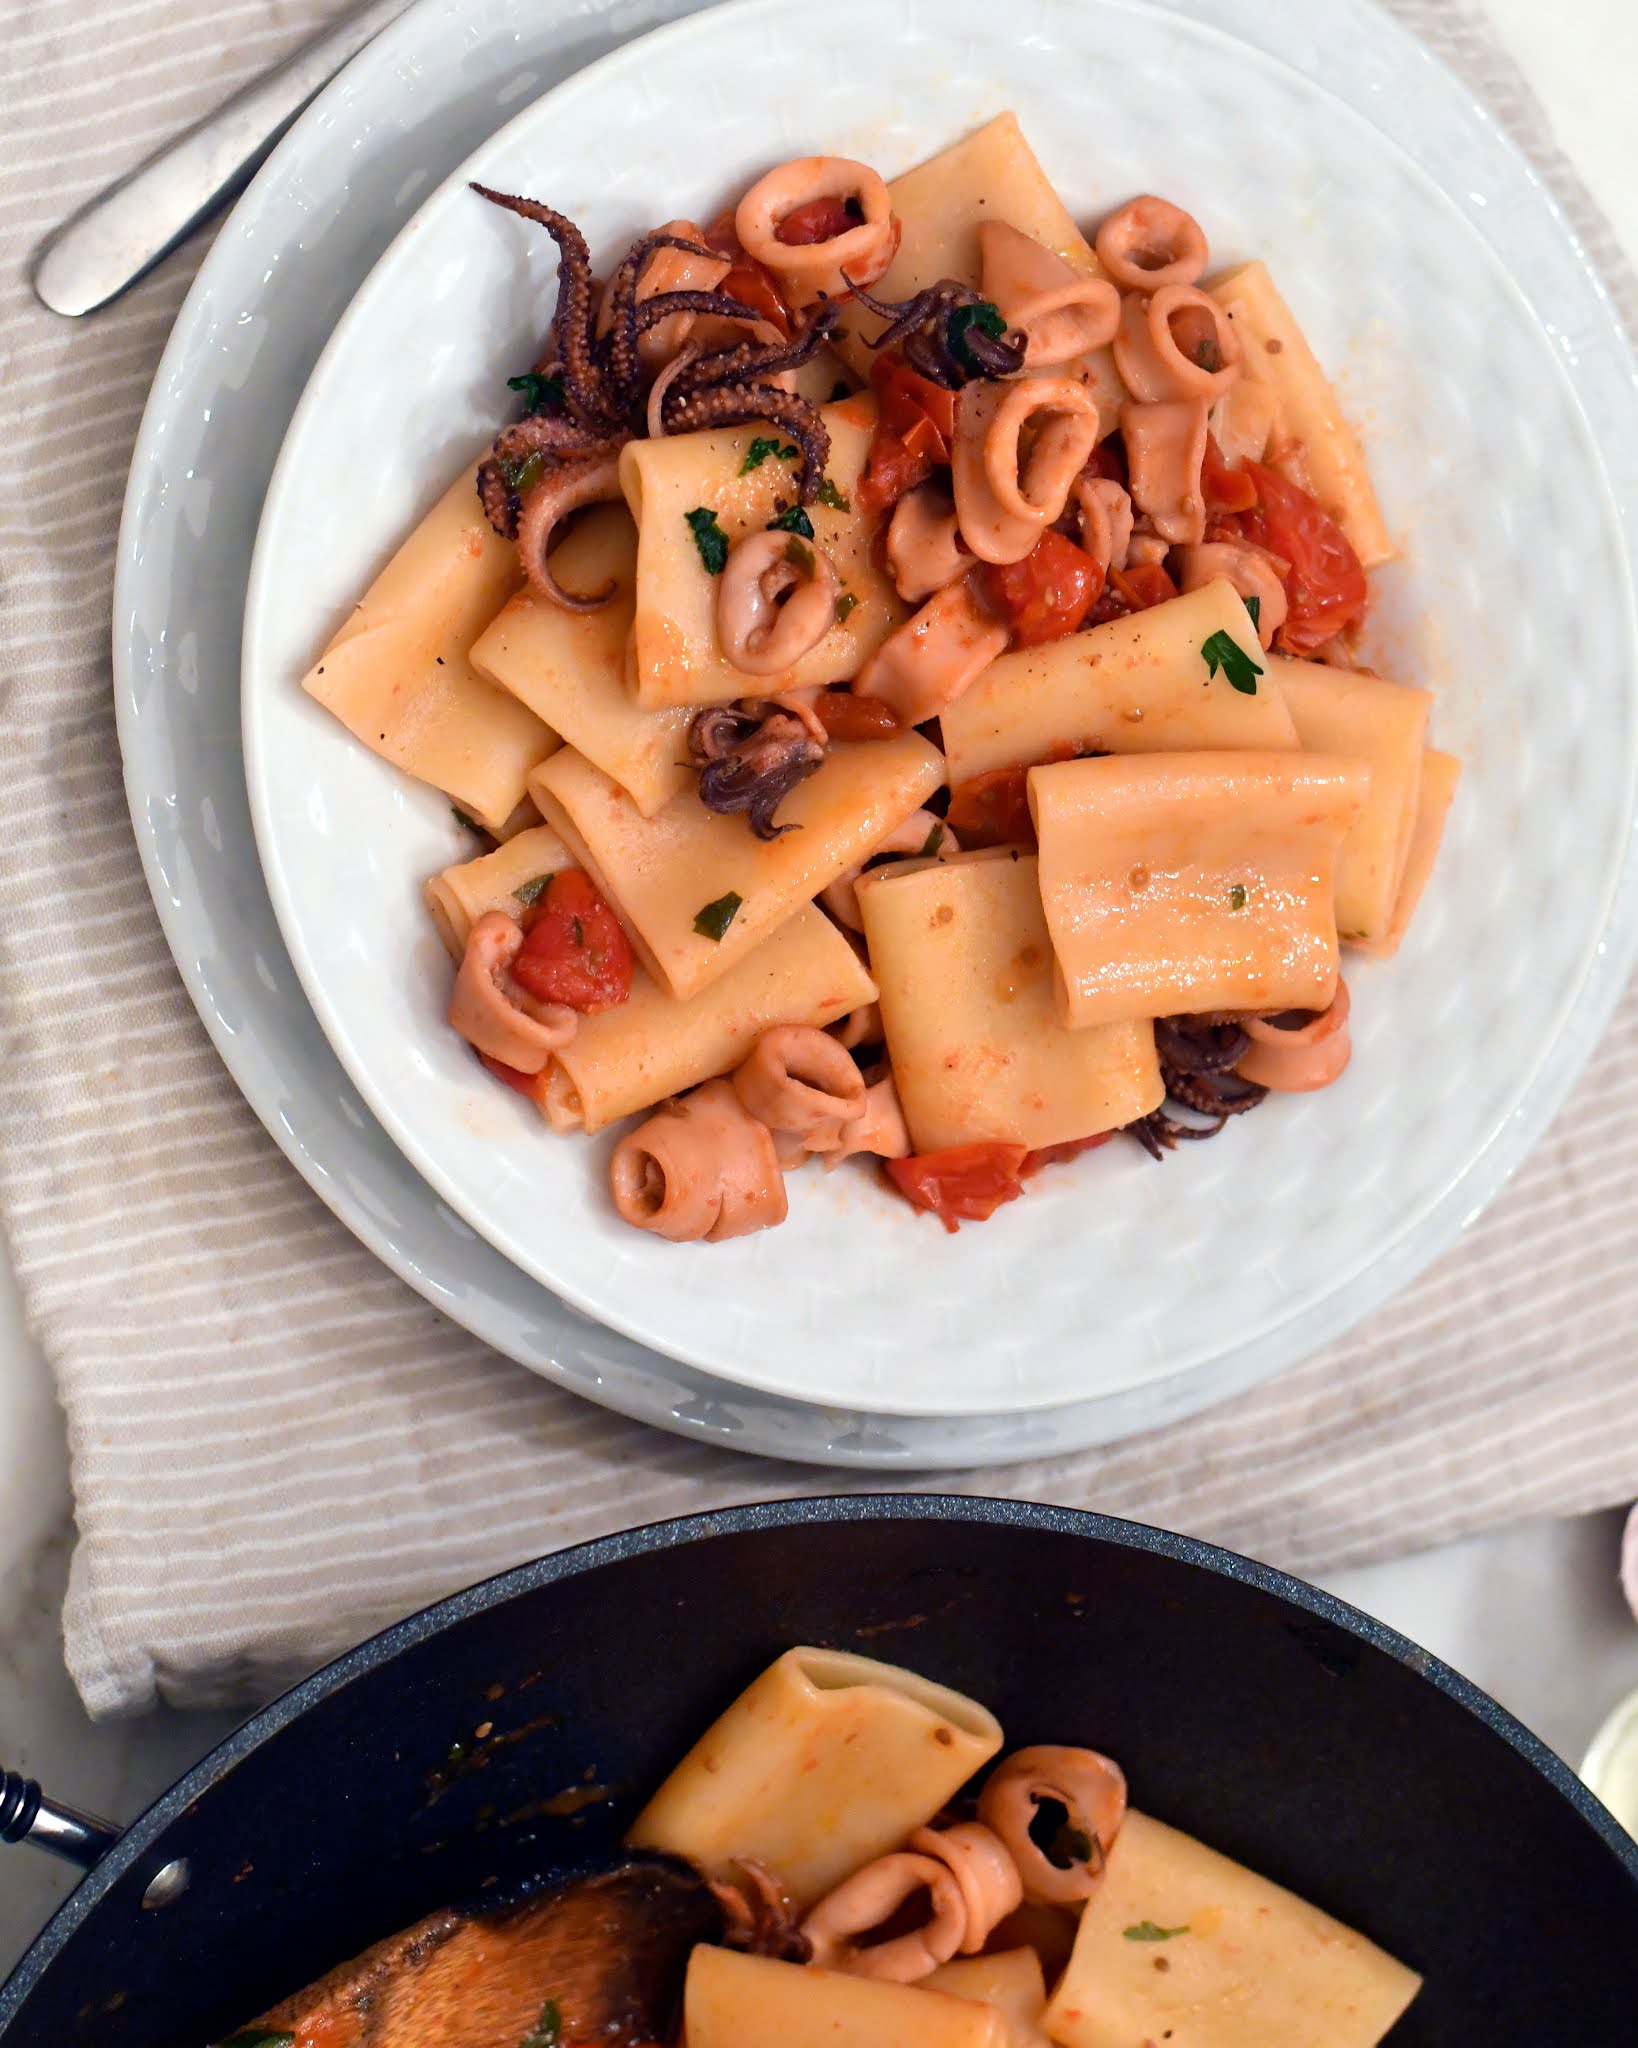 Cooking with Manuela: Authentic Italian Pasta with Calamari Sauce